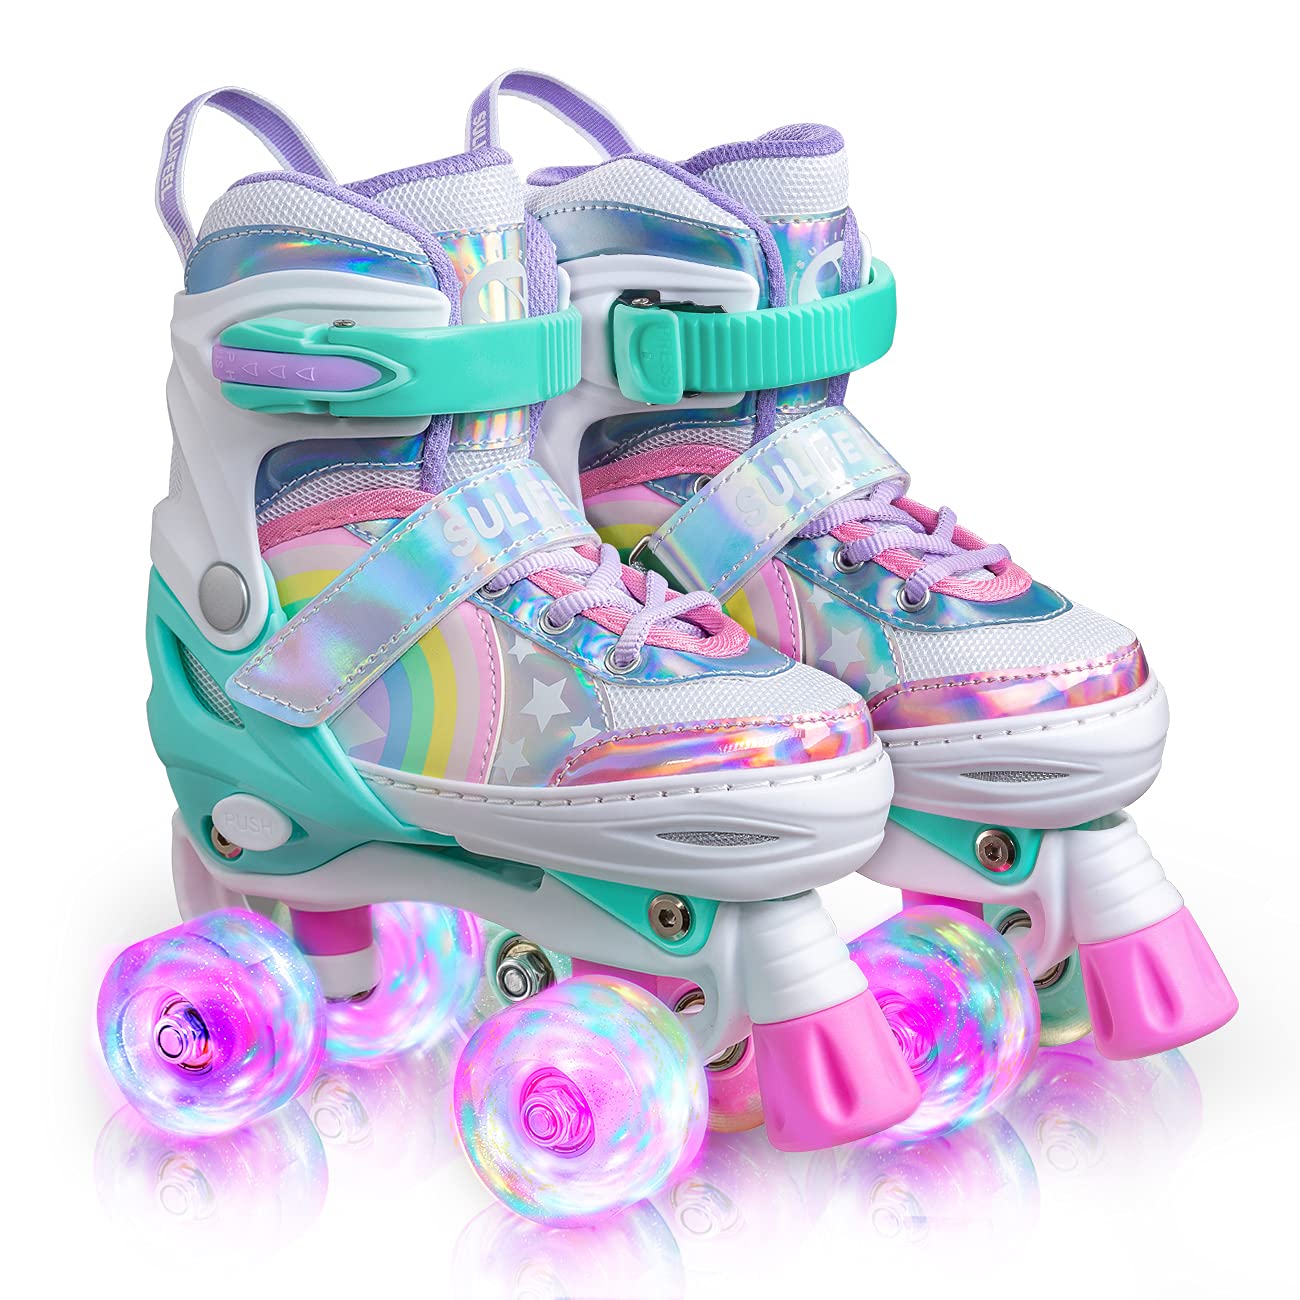  SULIFEEL Радужный единорог 4 размера регулируемые роликовые коньки с подсветкой для девочек и мальчиков для детей...